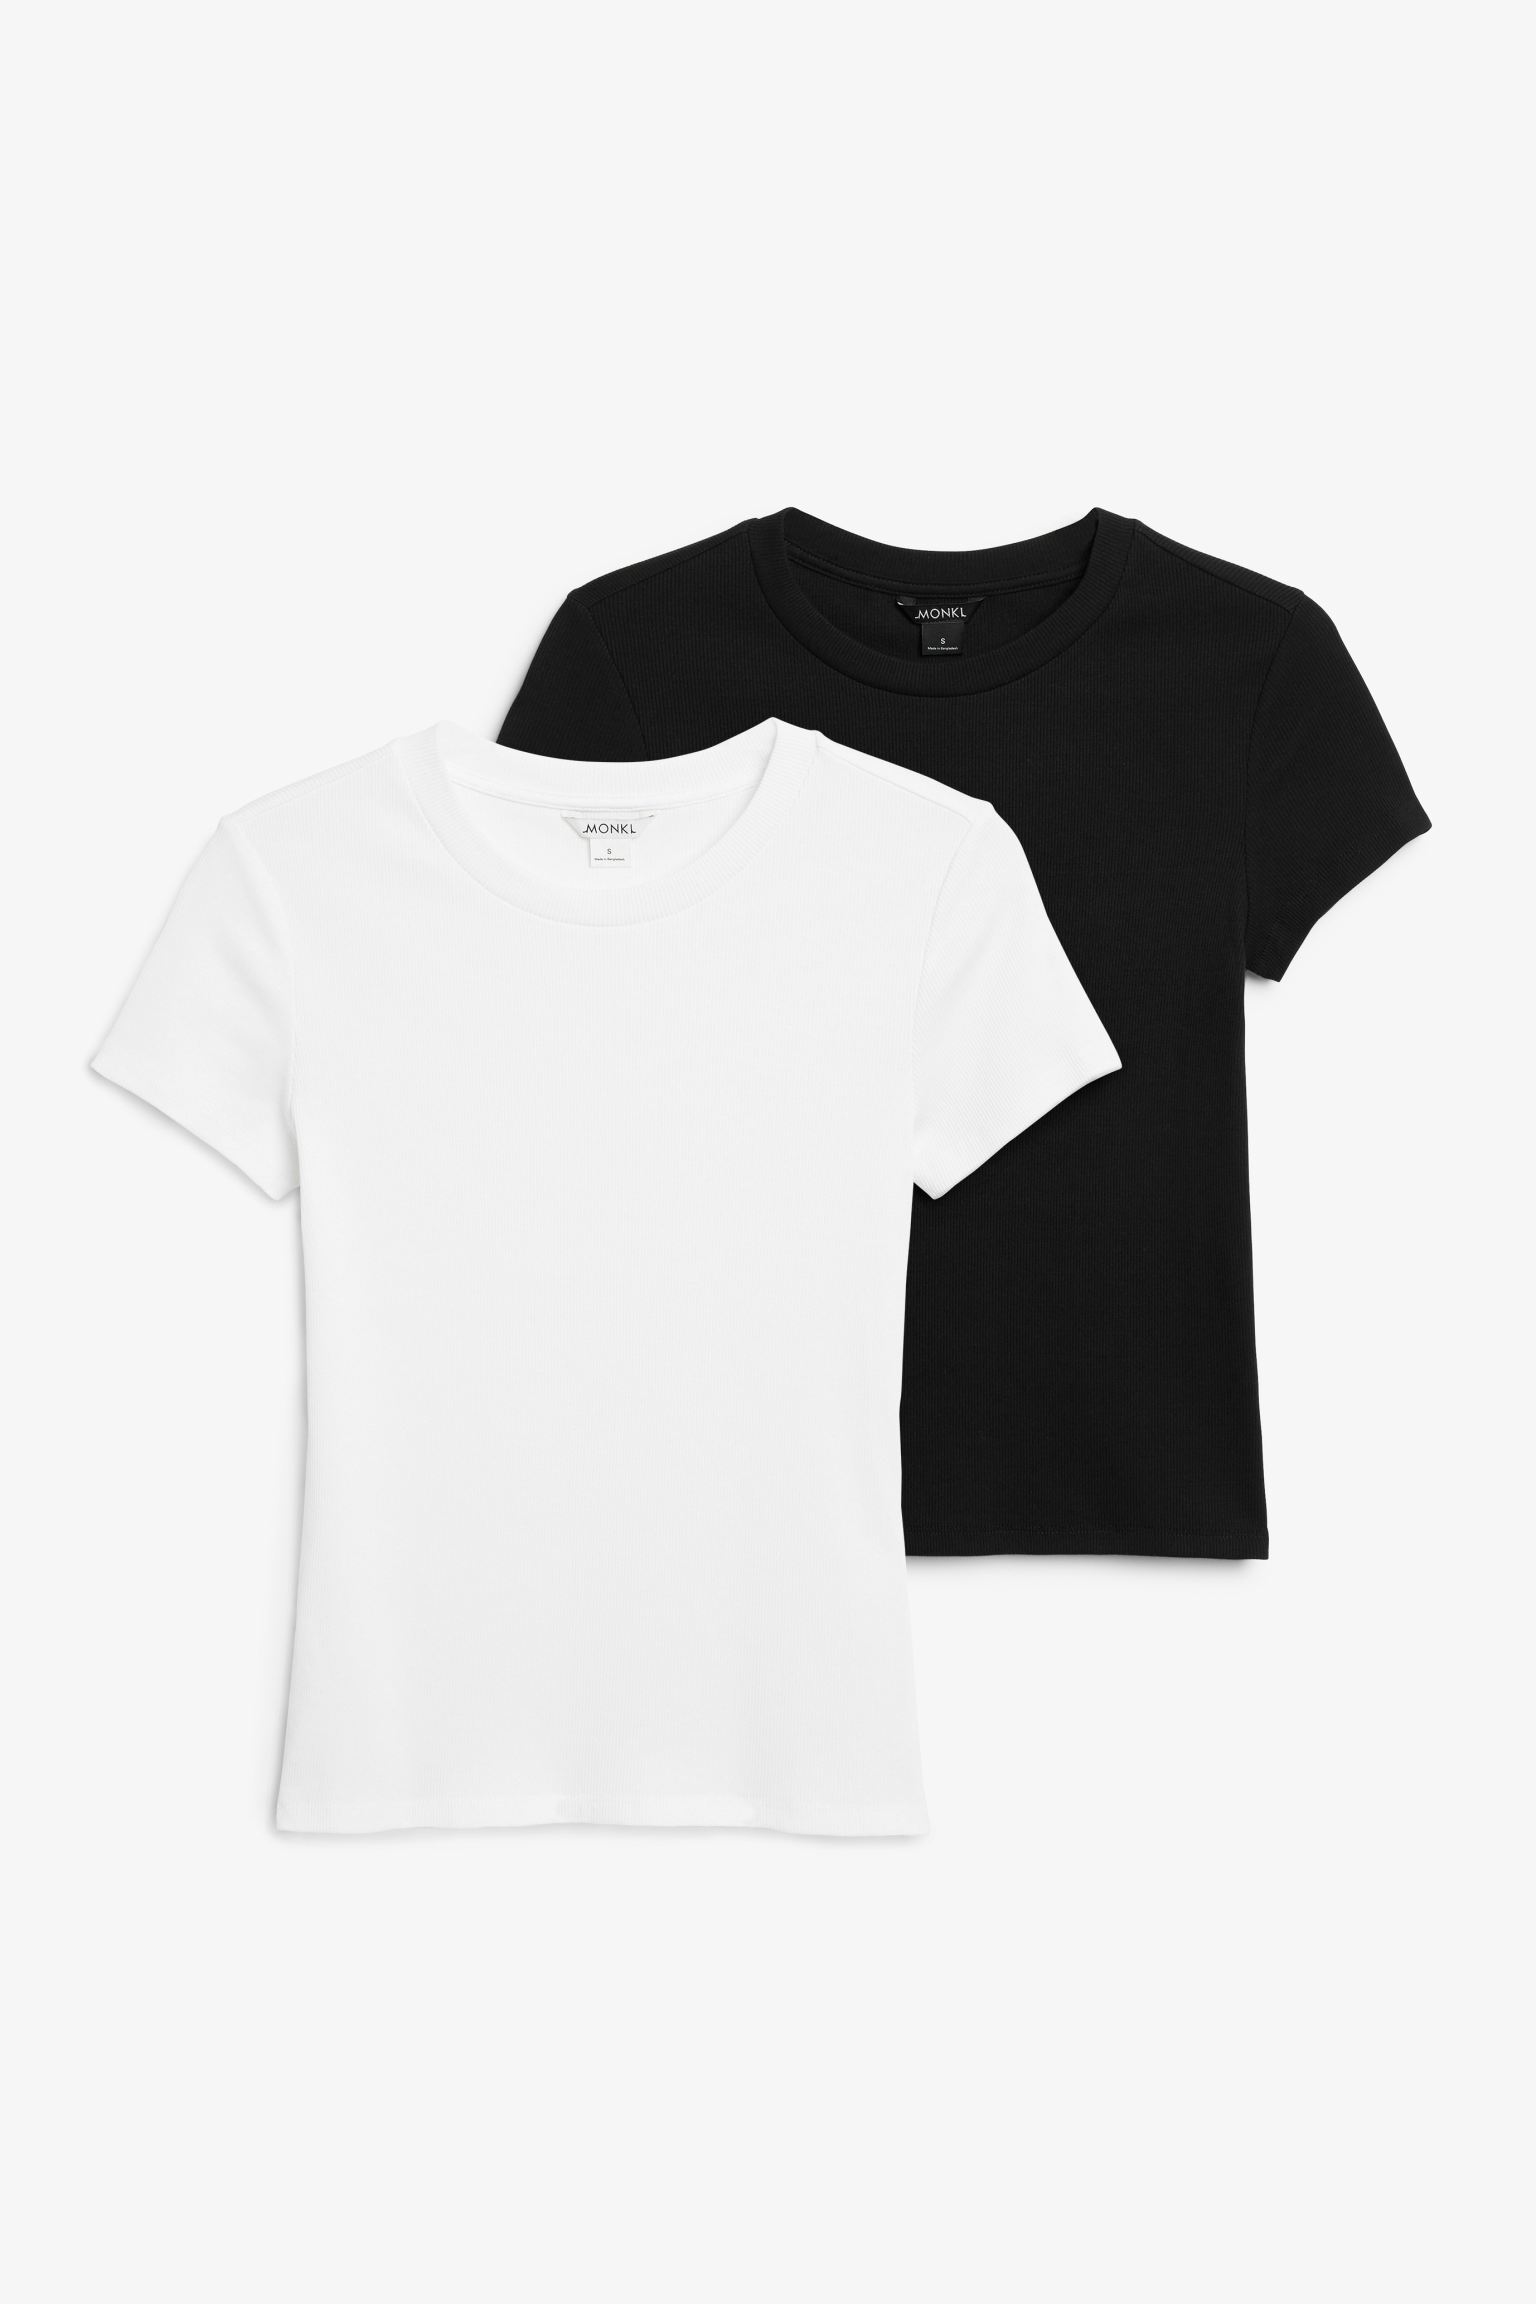 Комплект футболок женских Monki 1174161006 черных XS (доставка из-за рубежа)